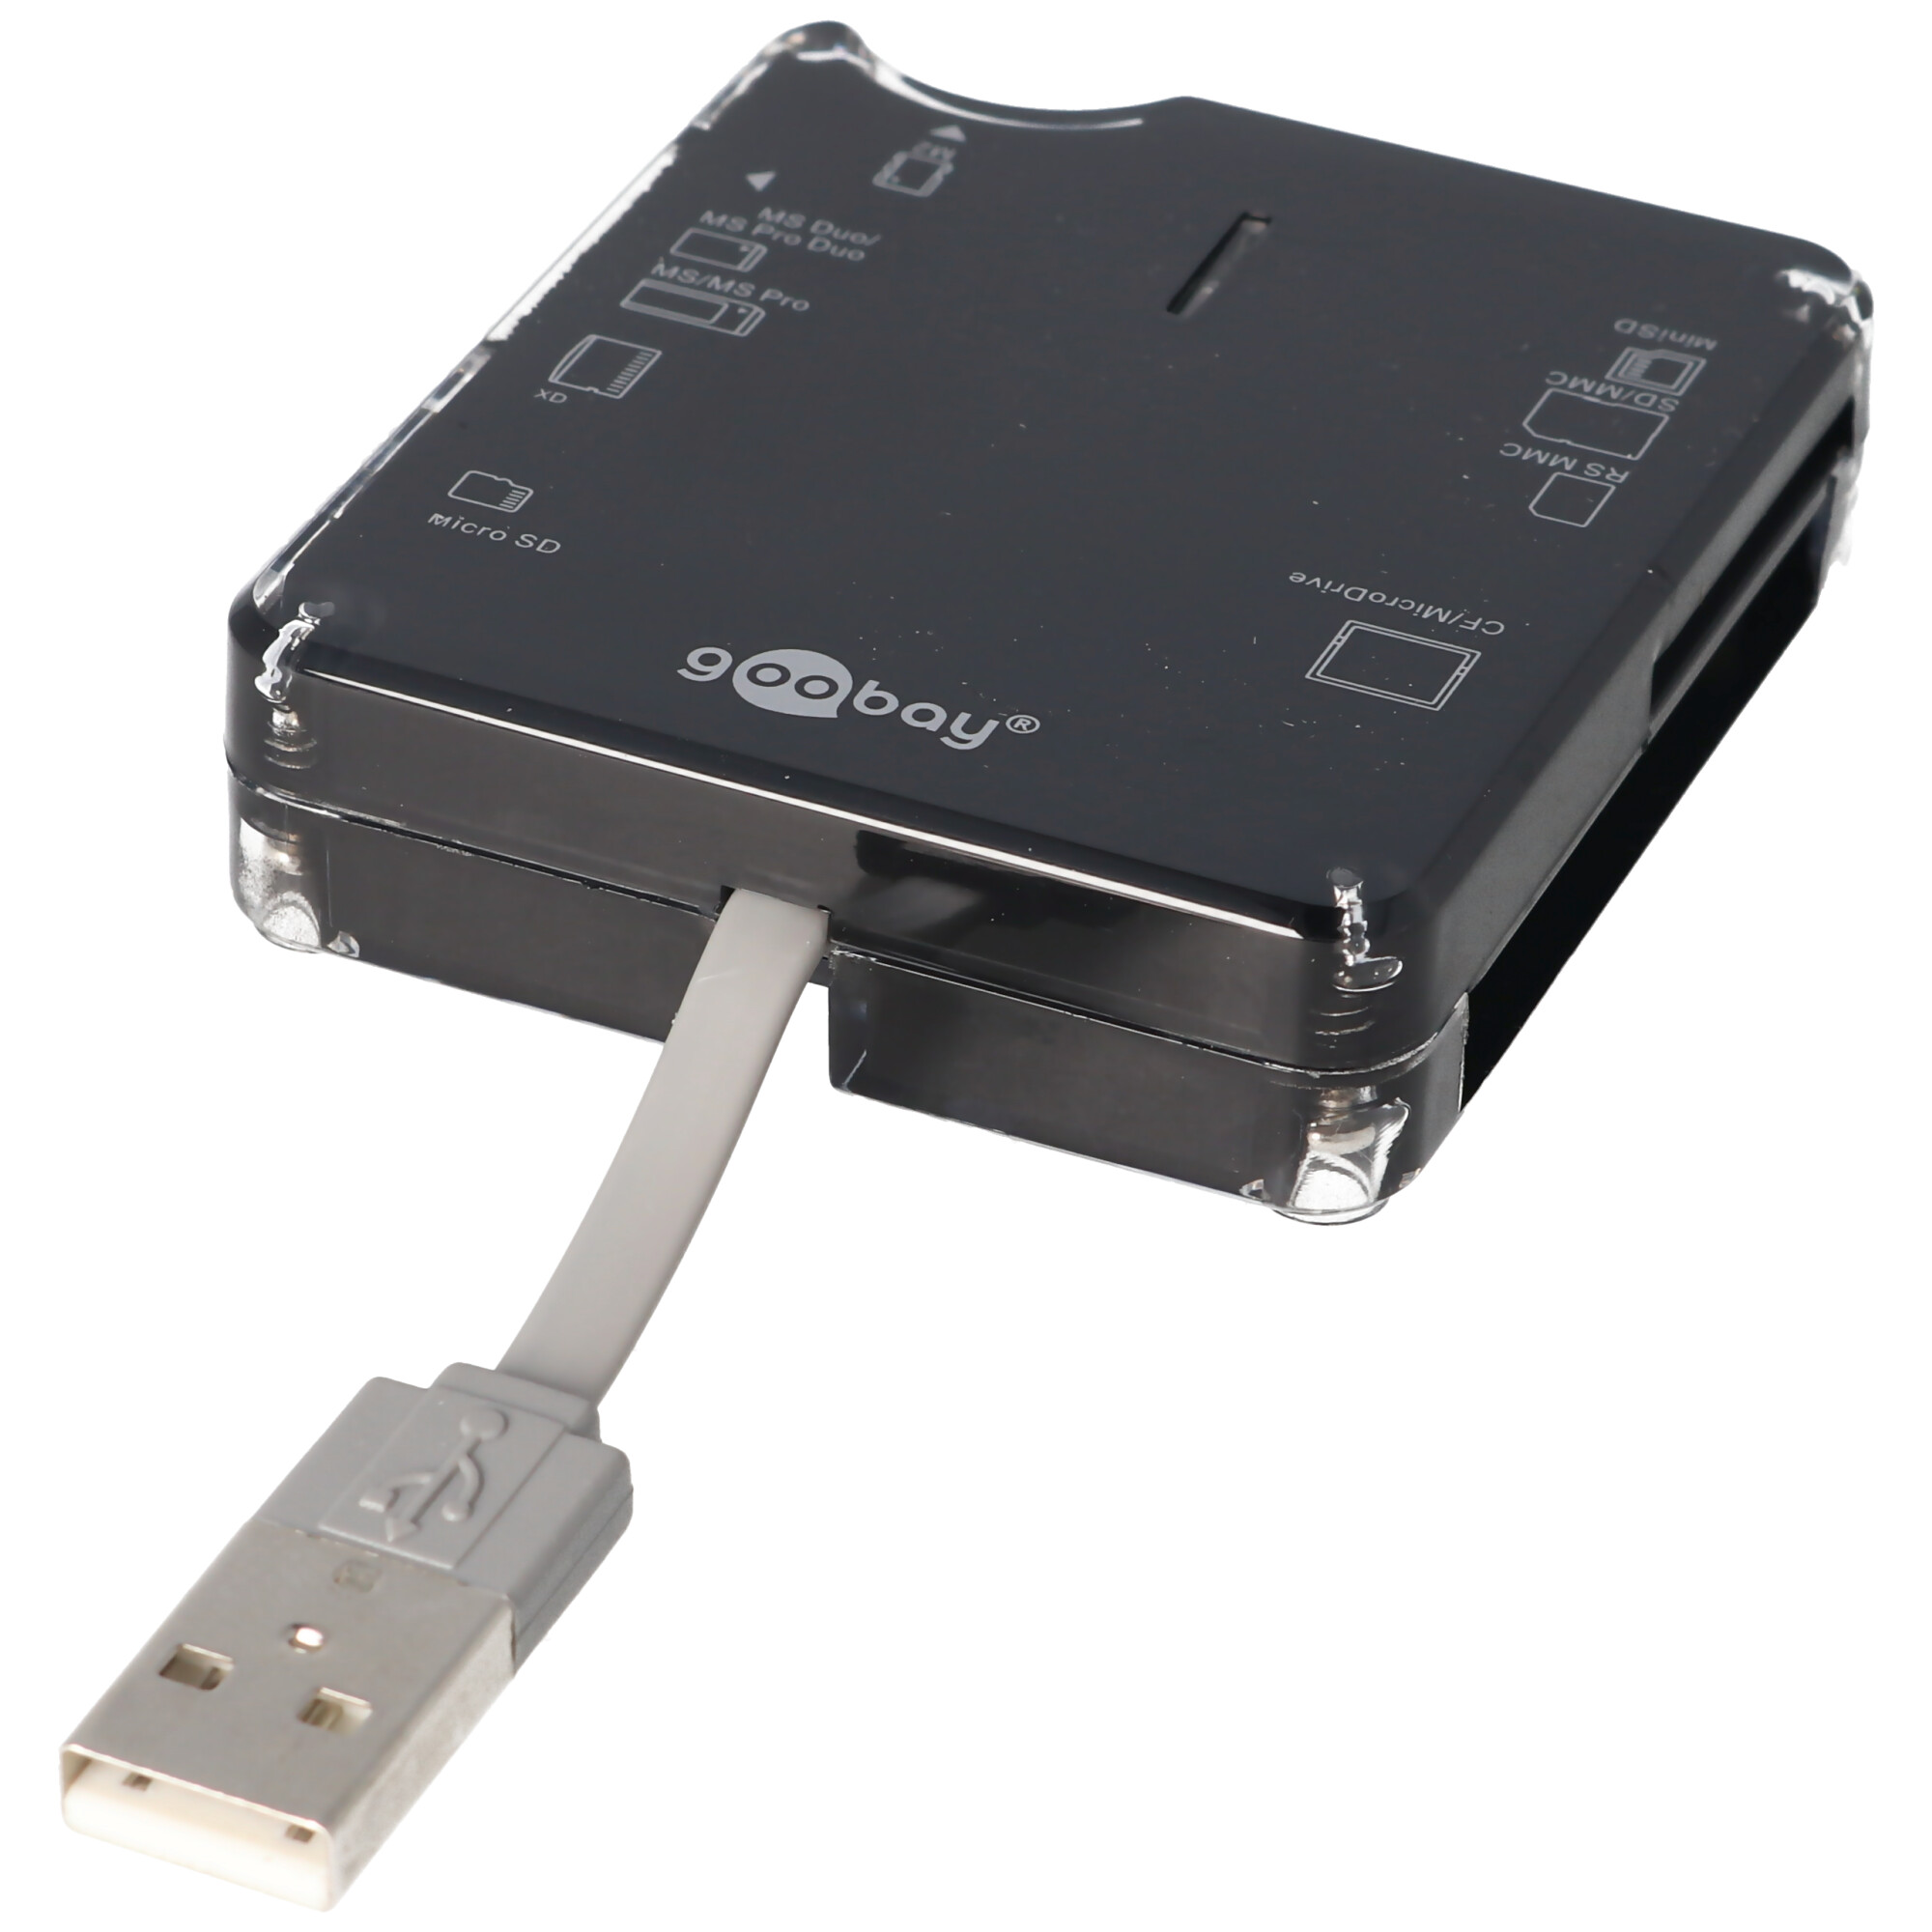 Cardreader All in 1 extern Kartenlesegerät USB 2.0 Hi-Speed, 6 Kartenschächte